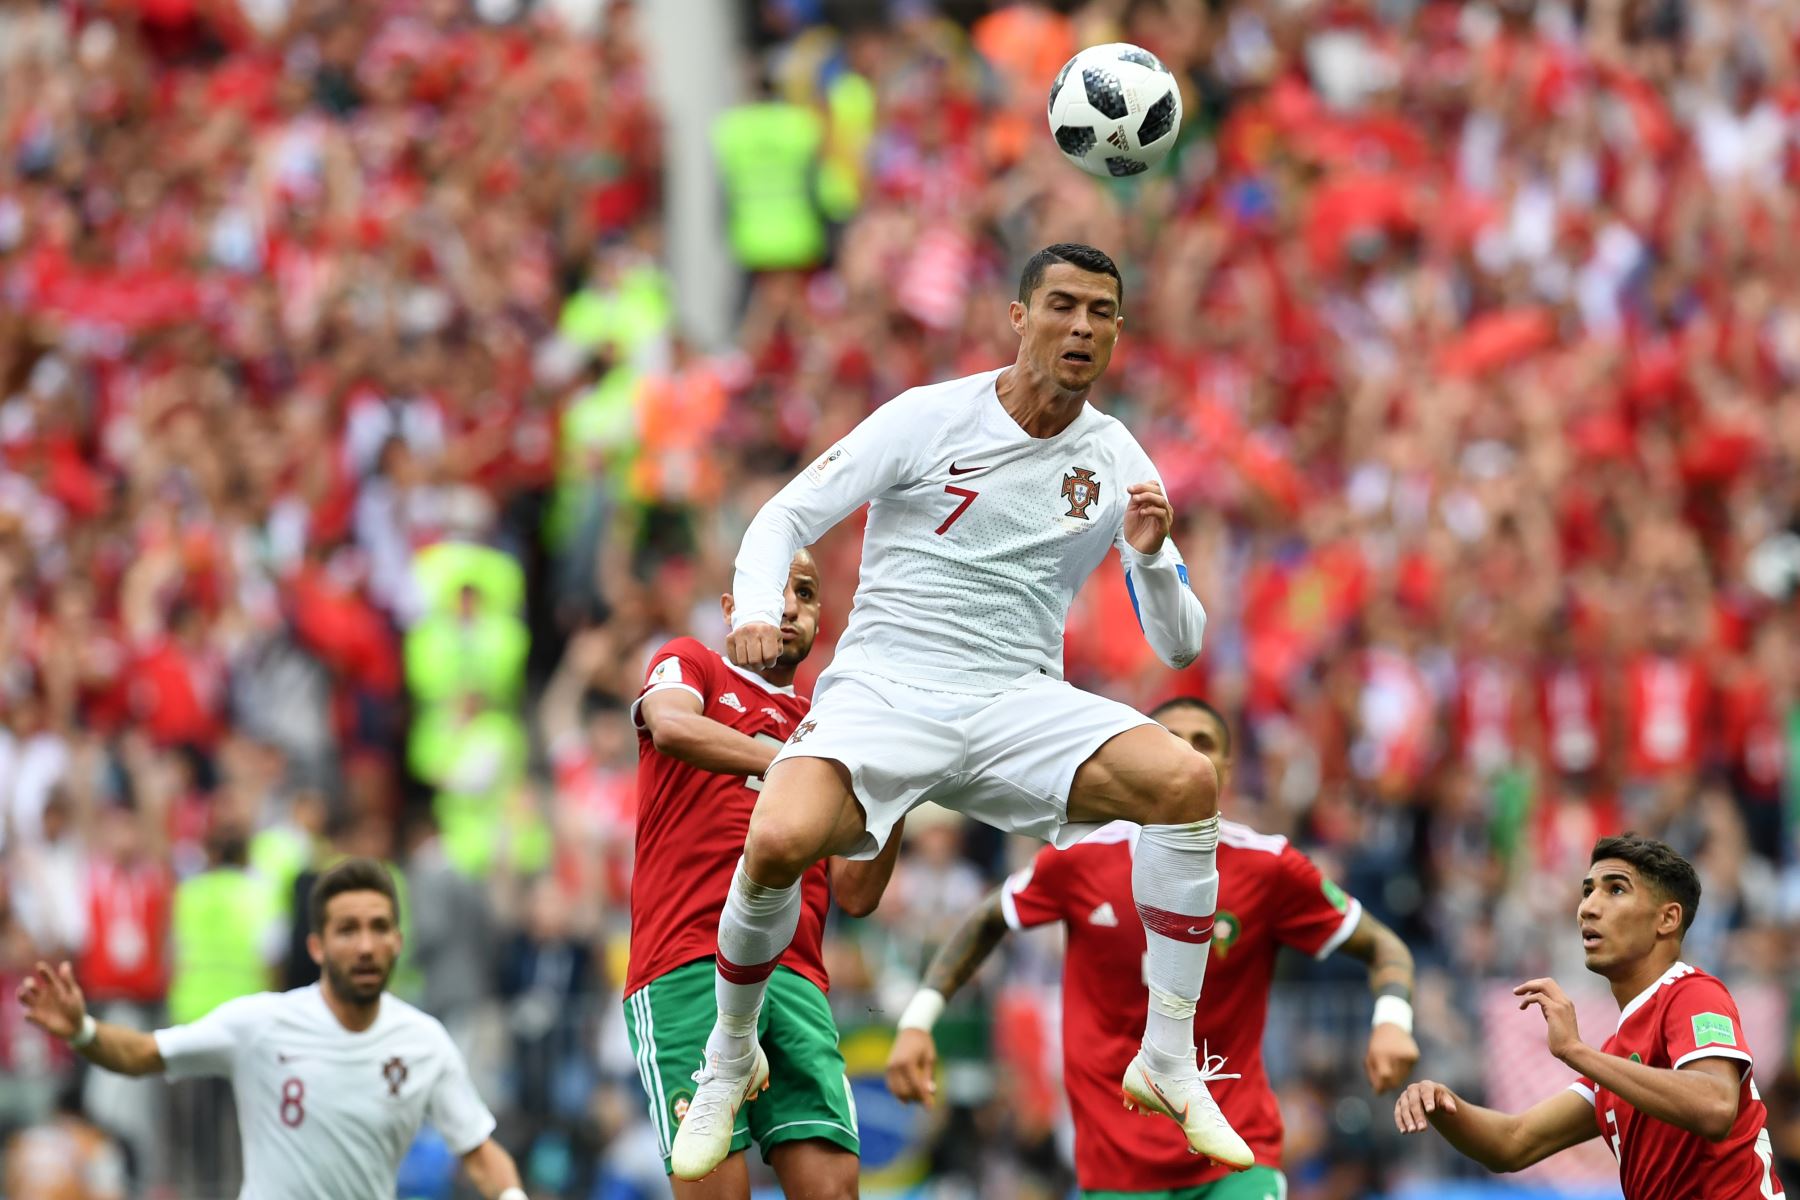 El delantero portugués Cristiano Ronaldo encabeza la pelota durante el partido de fútbol del Grupo B de la Copa Mundial Rusia 2018 entre Portugal y Marruecos en el Estadio Luzhniki de Moscú el 20 de junio de 2018. / AFP